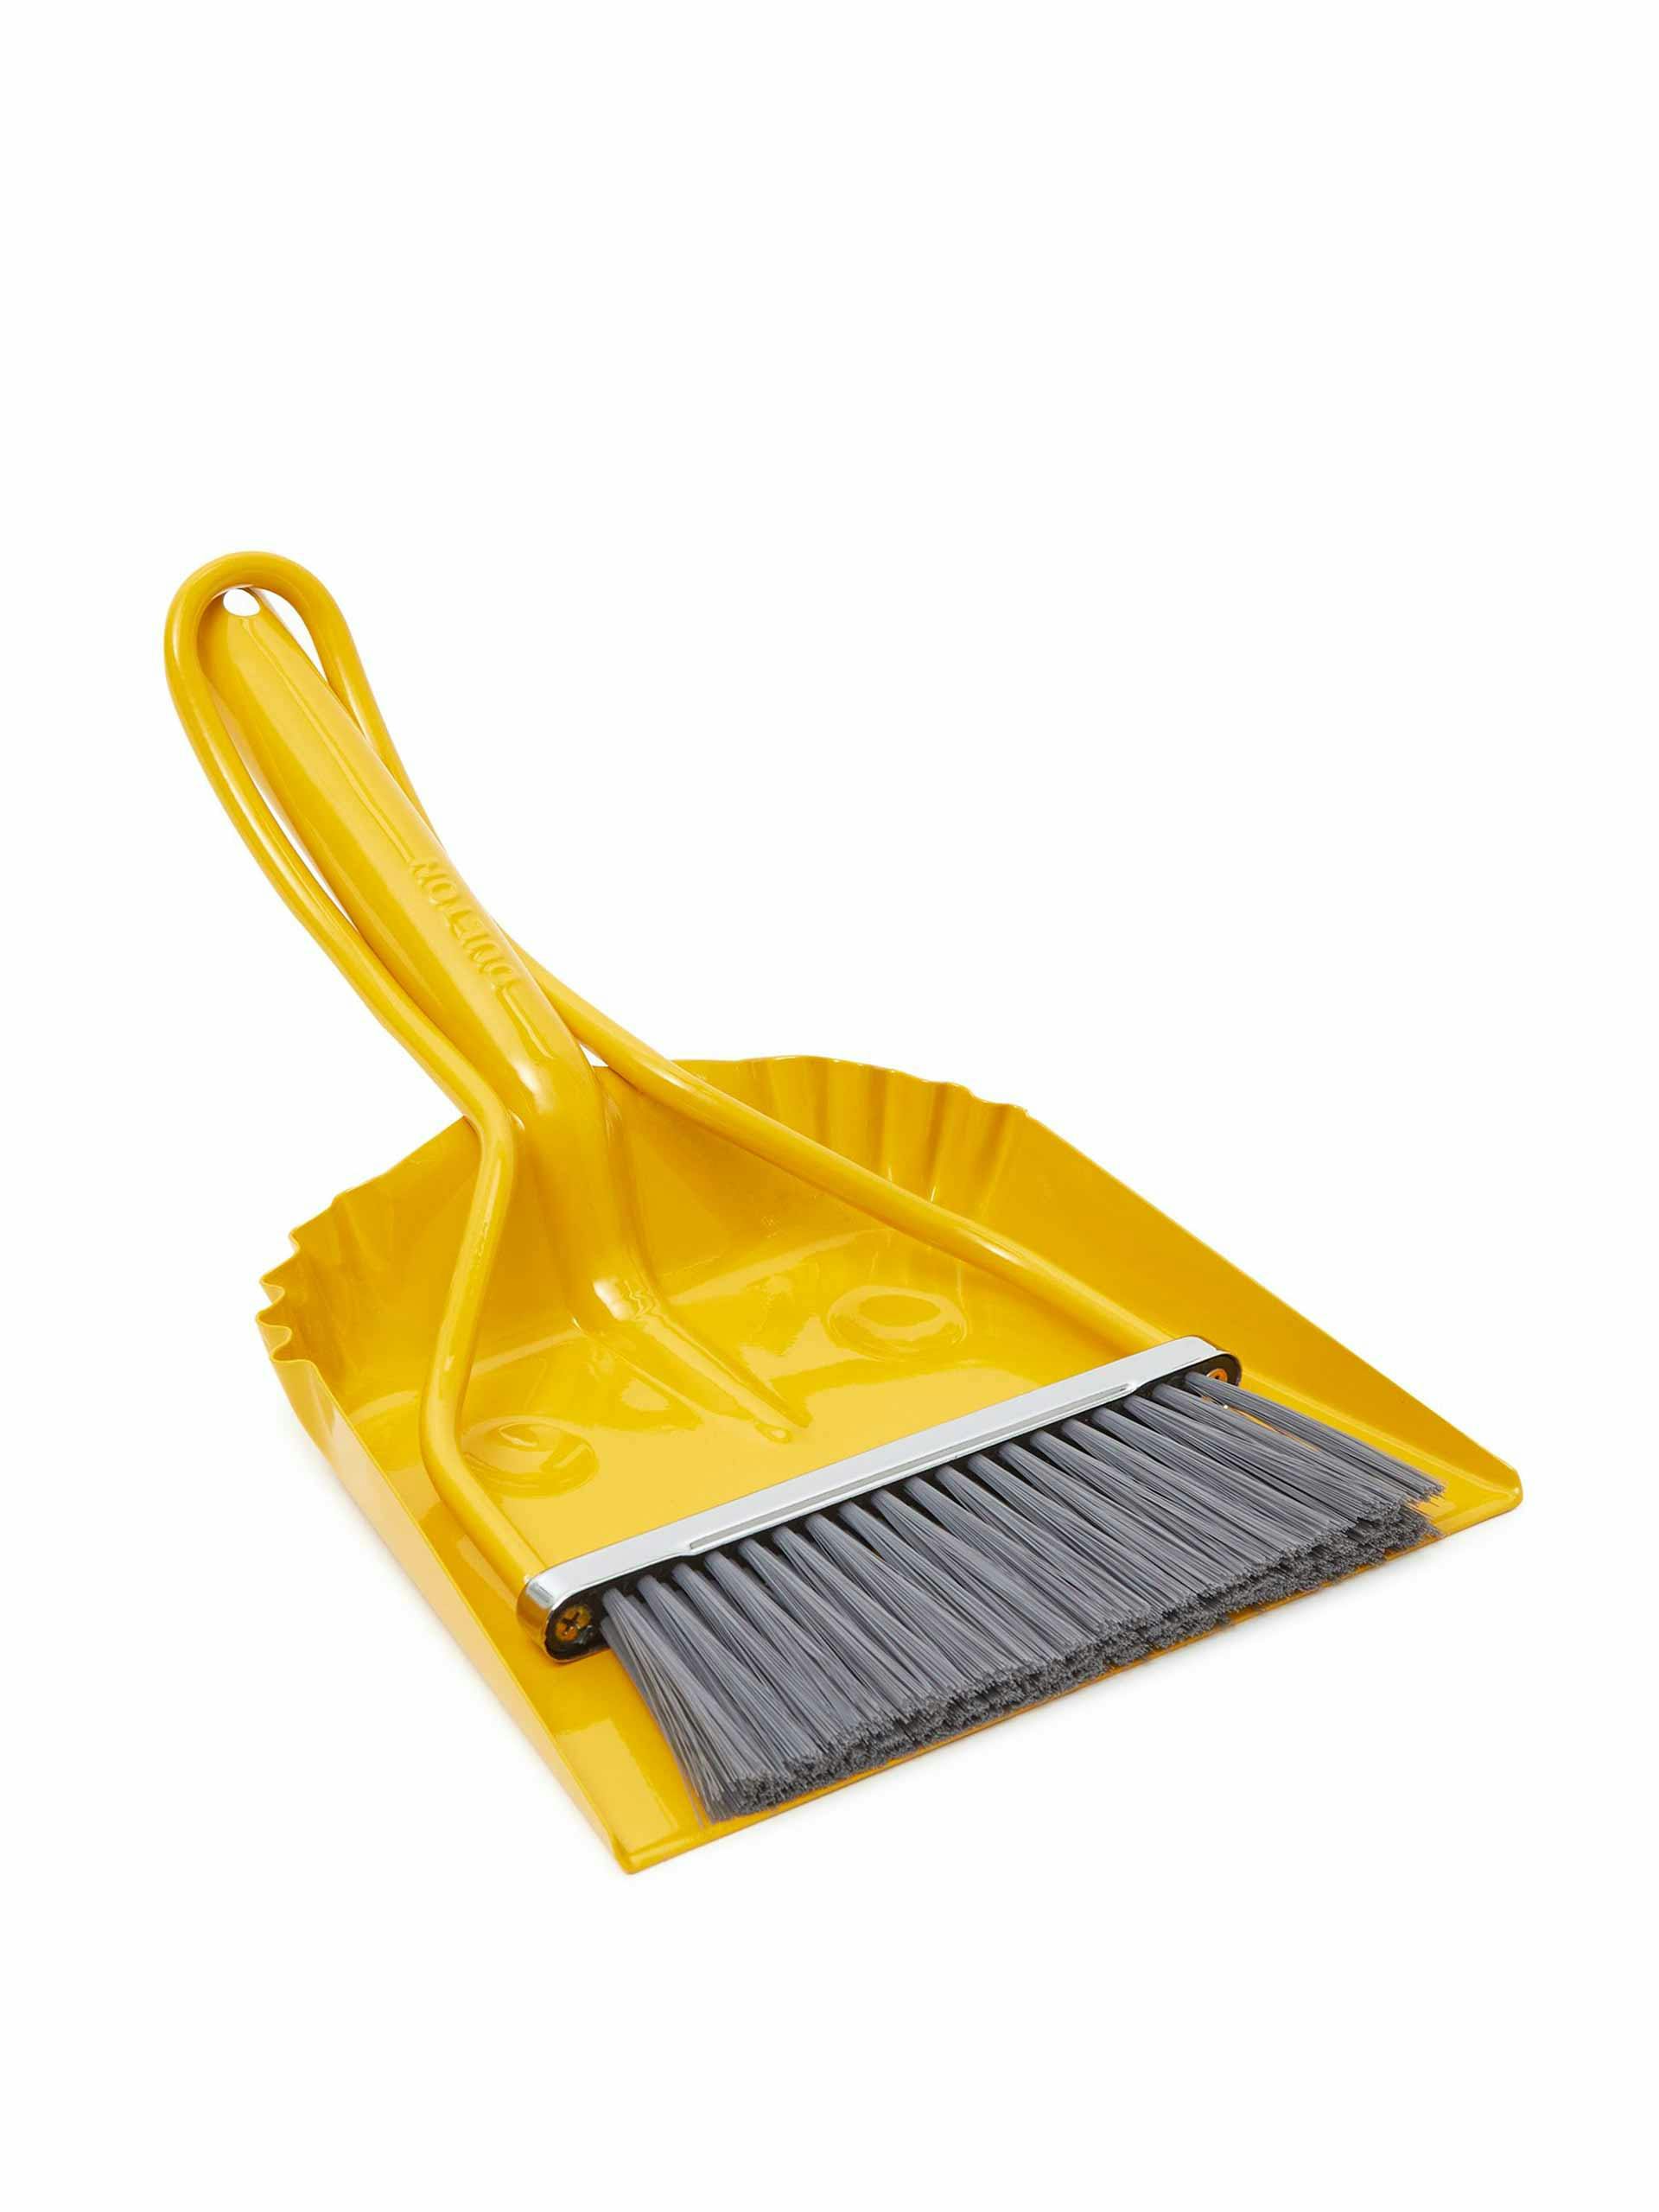 Yellow dustpan and brush